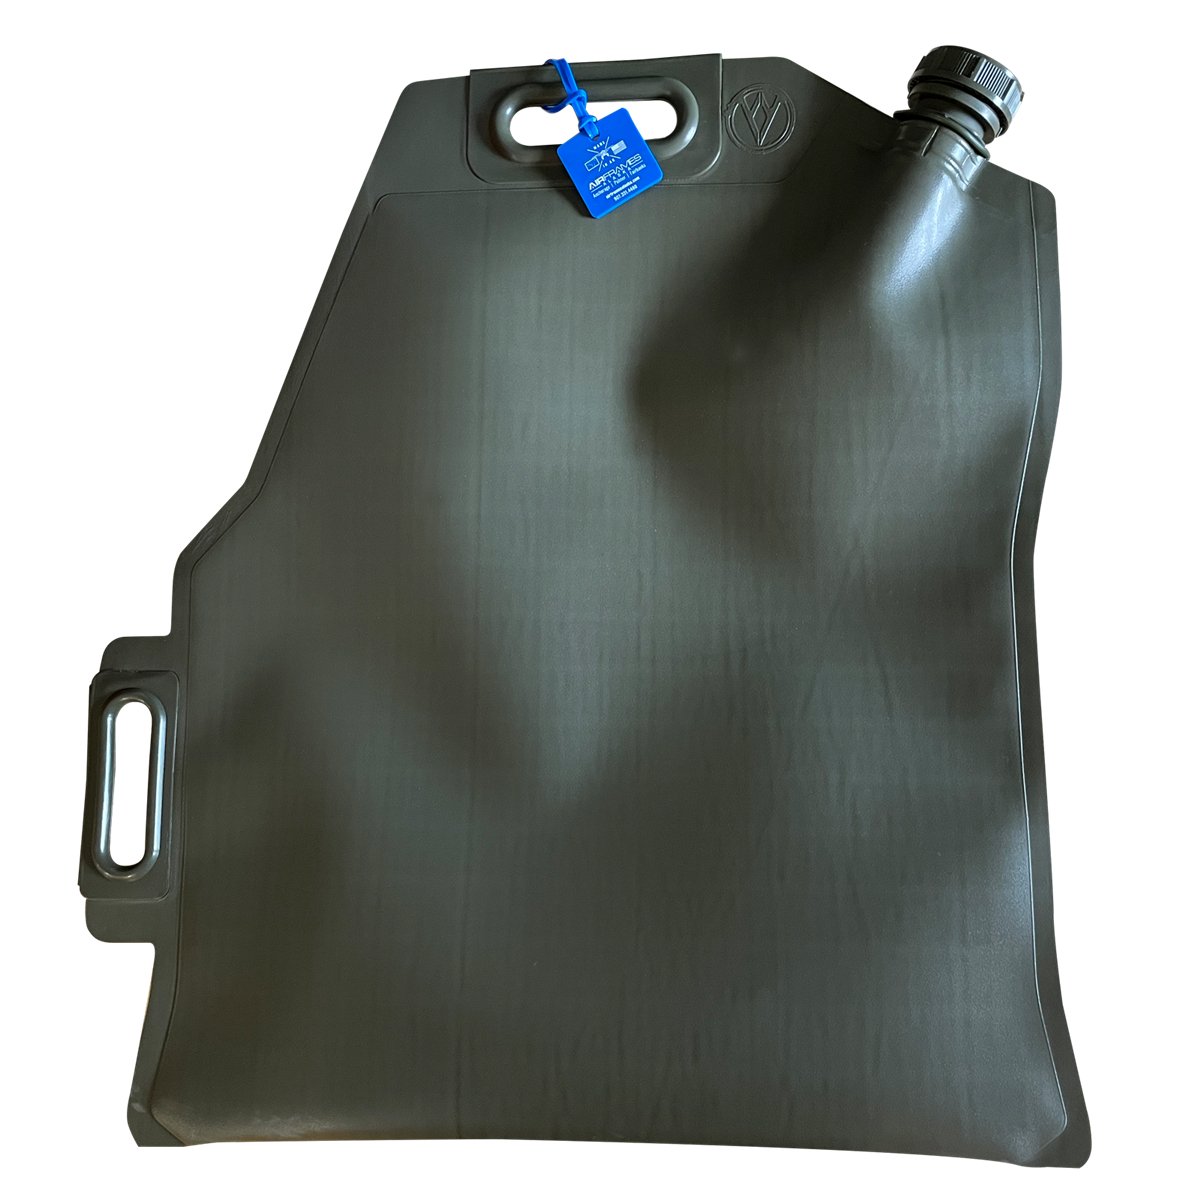 Alaska Gear Company Liquid Containment Bag - Liquid Bag 5.2 GAL (Retail)